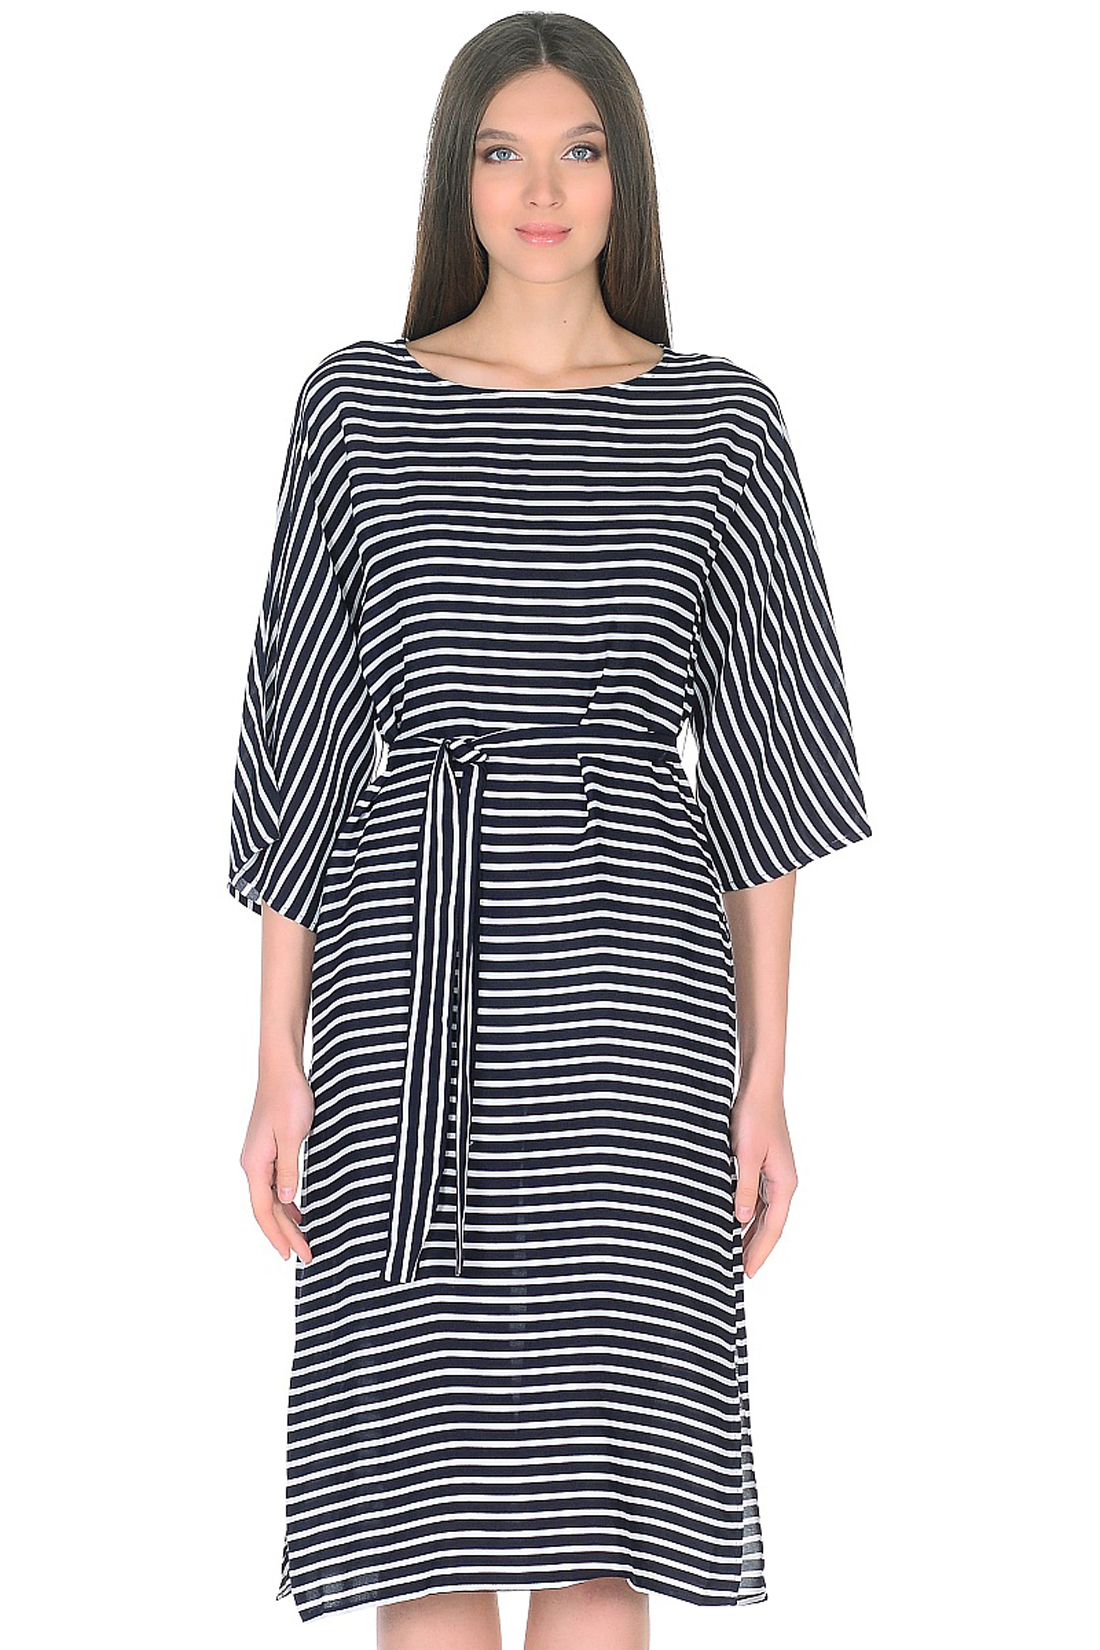 Платье в морскую полоску с поясом (арт. baon B458036), размер XS, цвет dark navy striped#синий Платье в морскую полоску с поясом (арт. baon B458036) - фото 3